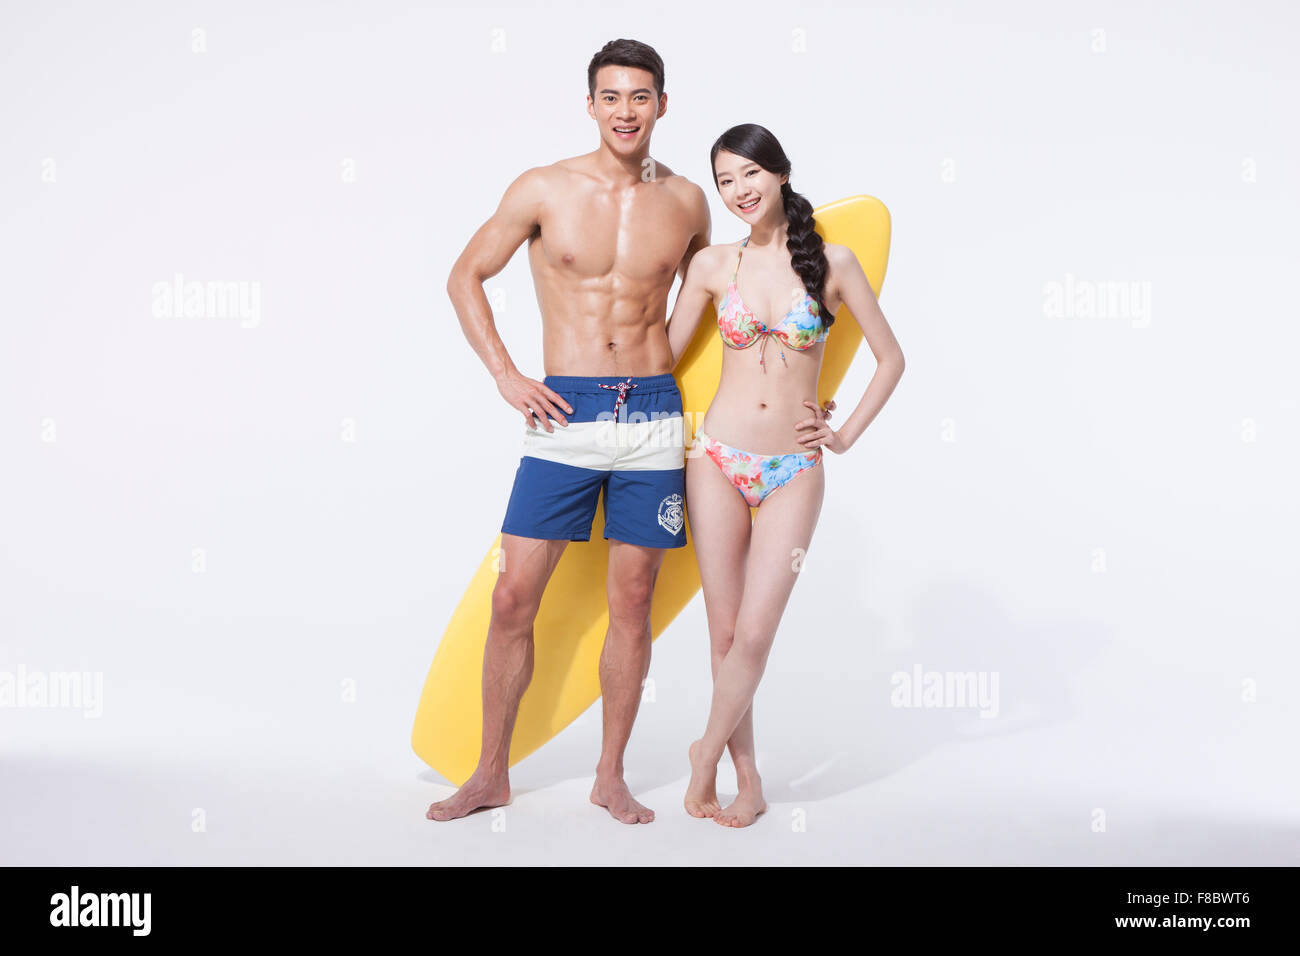 Muscular de un hombre y una mujer en traje de baño de pie con una junta de surf tanto mirando hacia adelante con una sonrisa Foto de stock